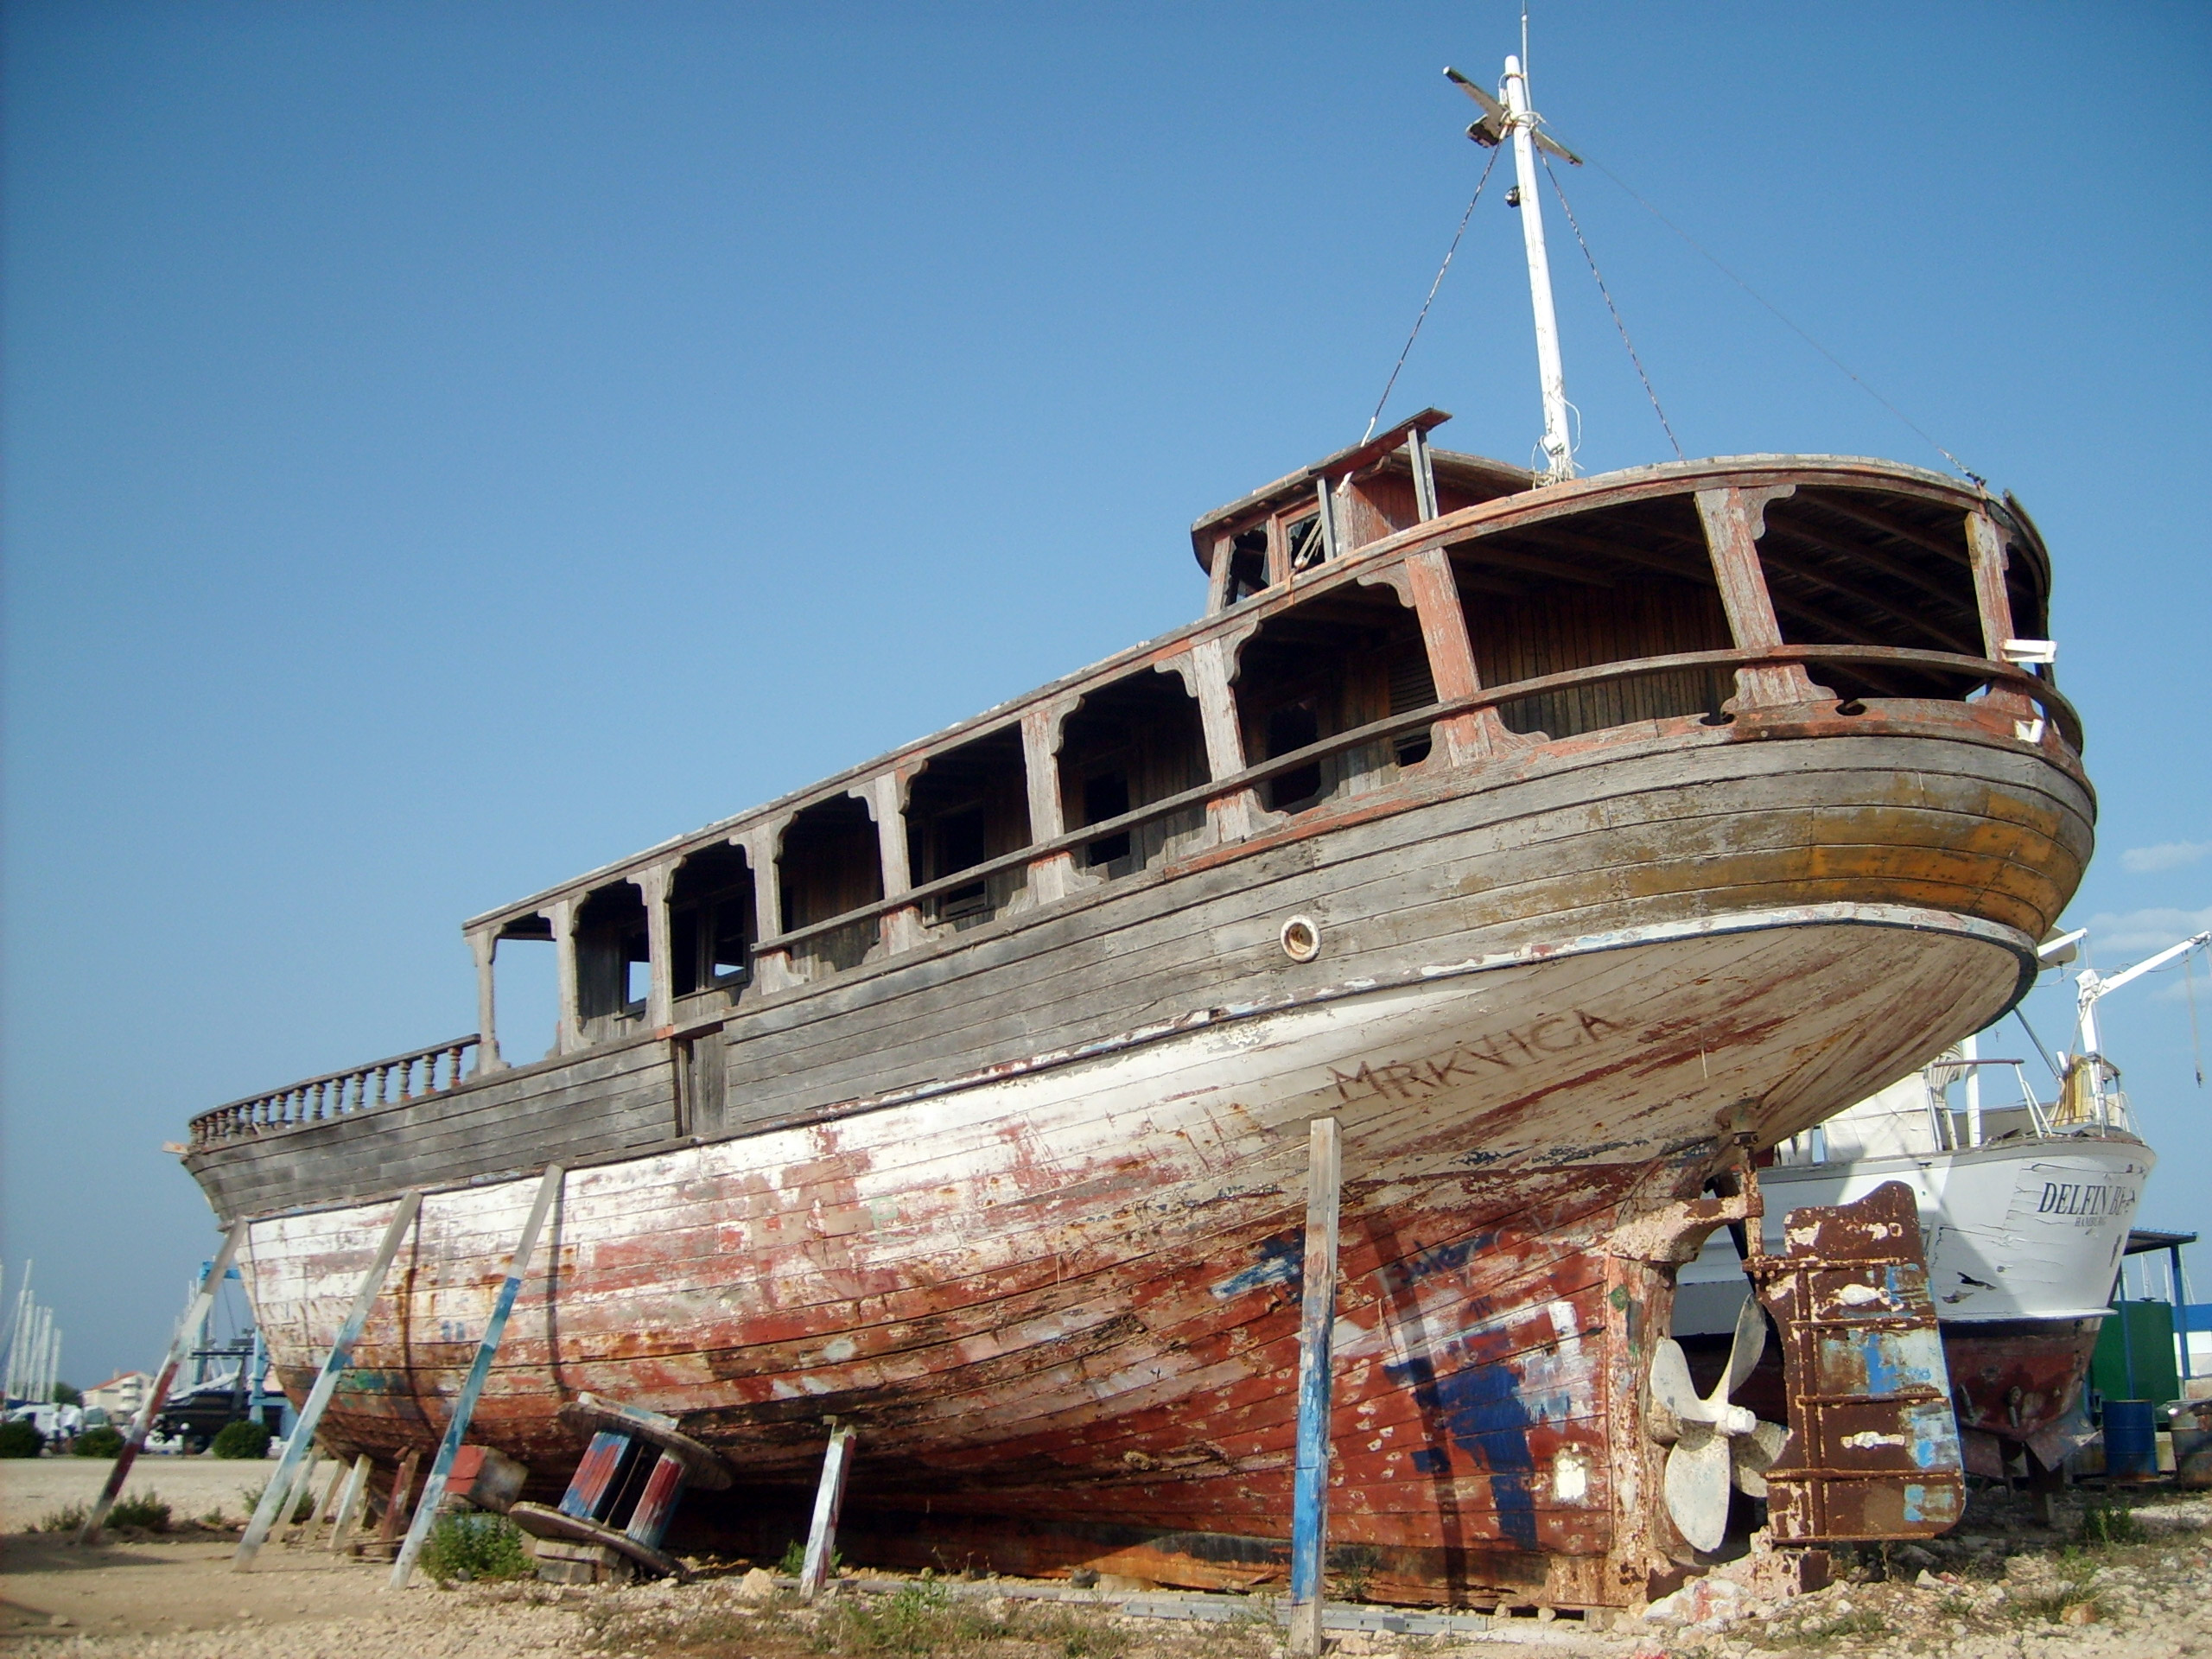 FREE IMAGE: Boat on dry land | Libreshot Public Domain Photos